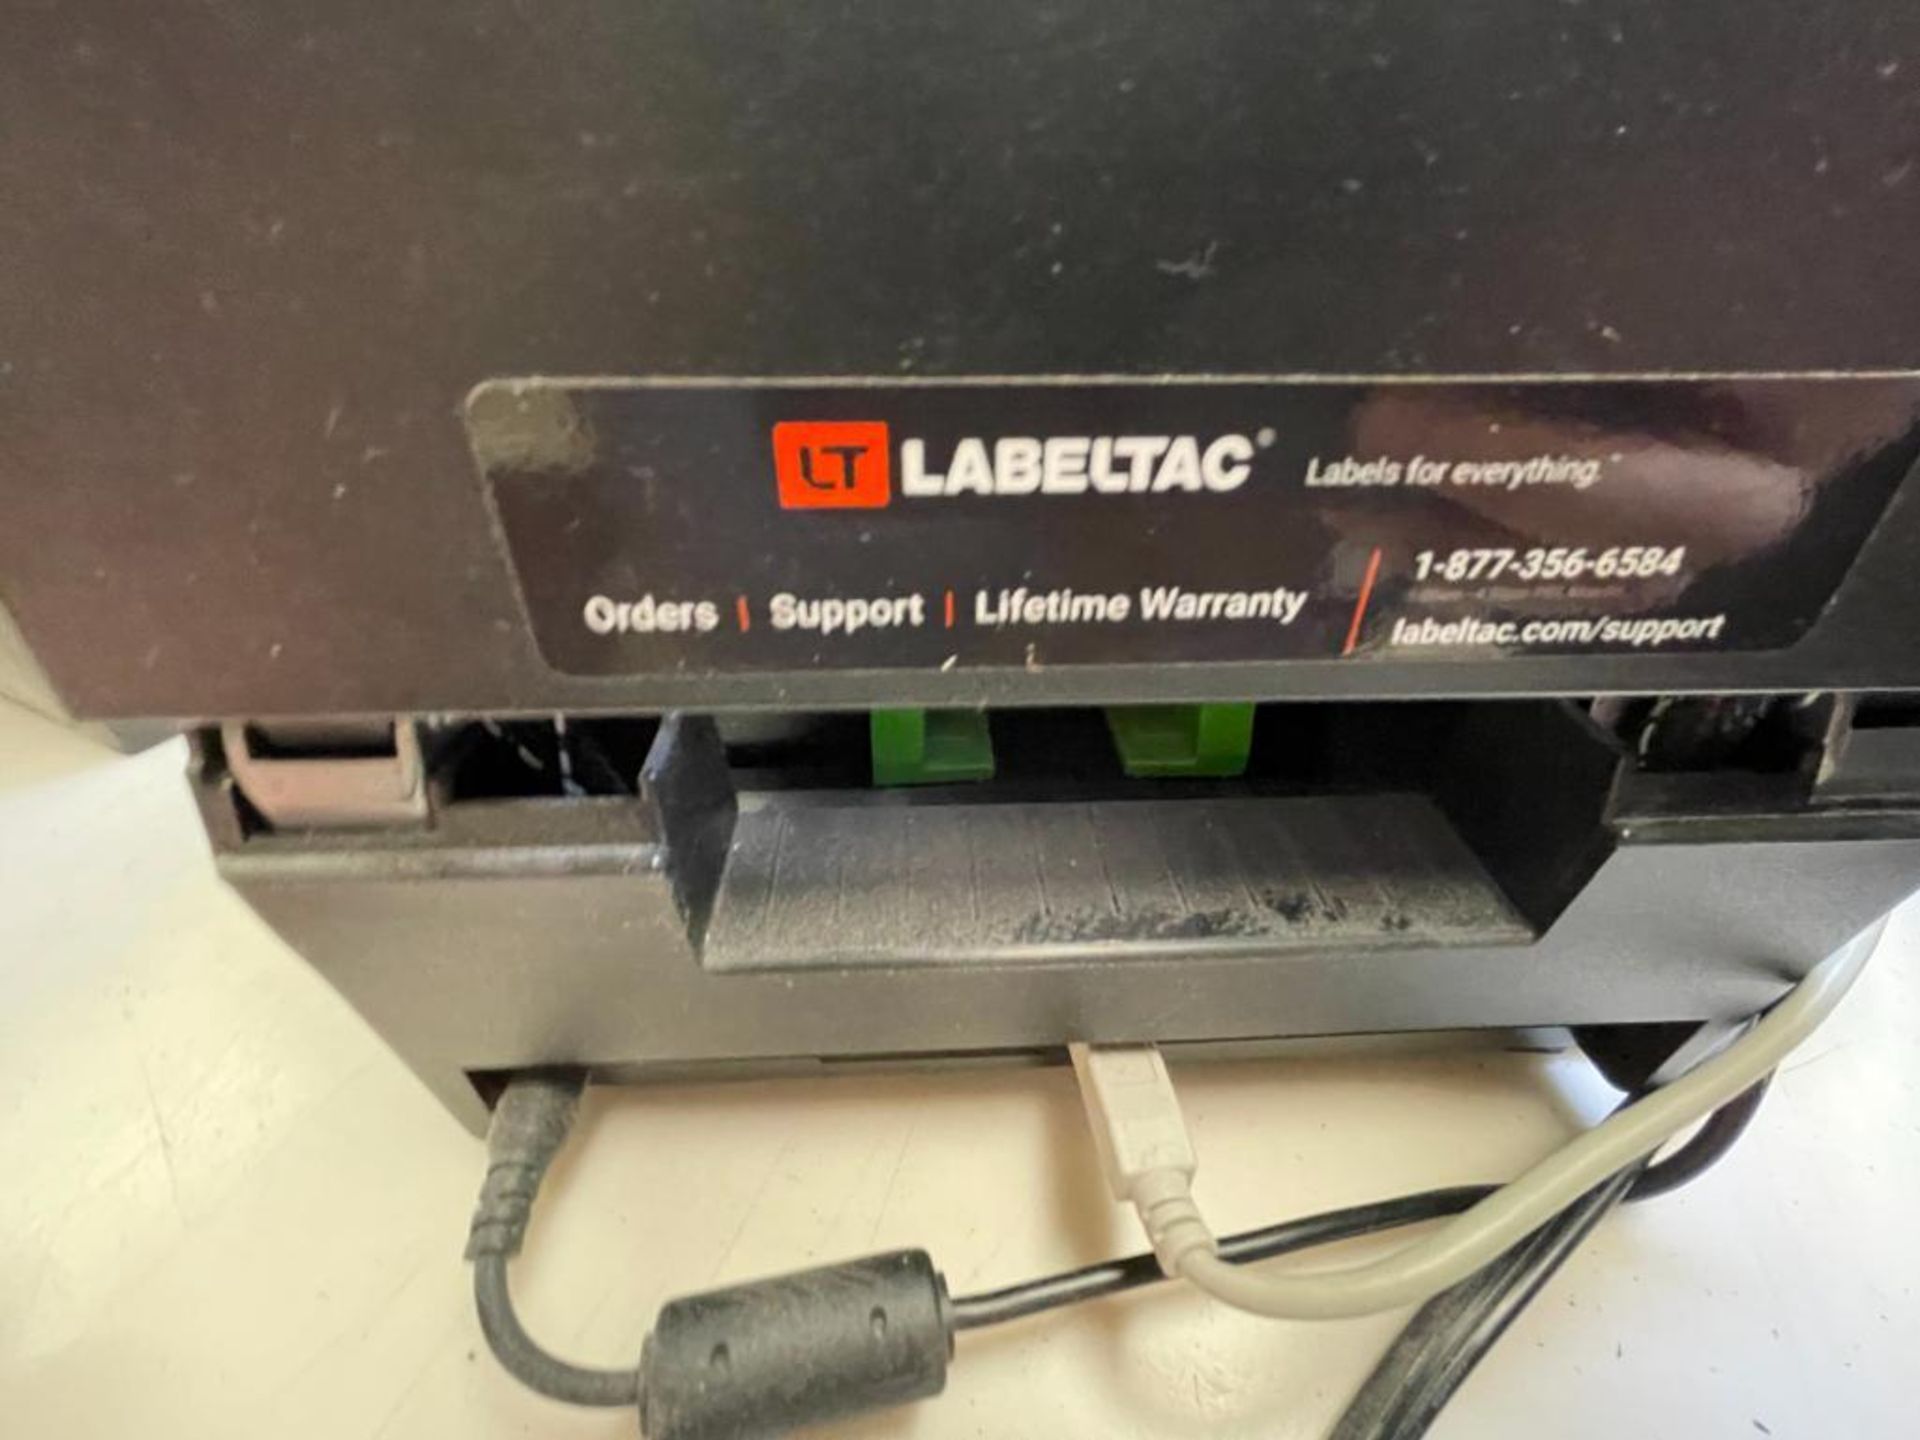 Labeltac label printer - Image 4 of 6